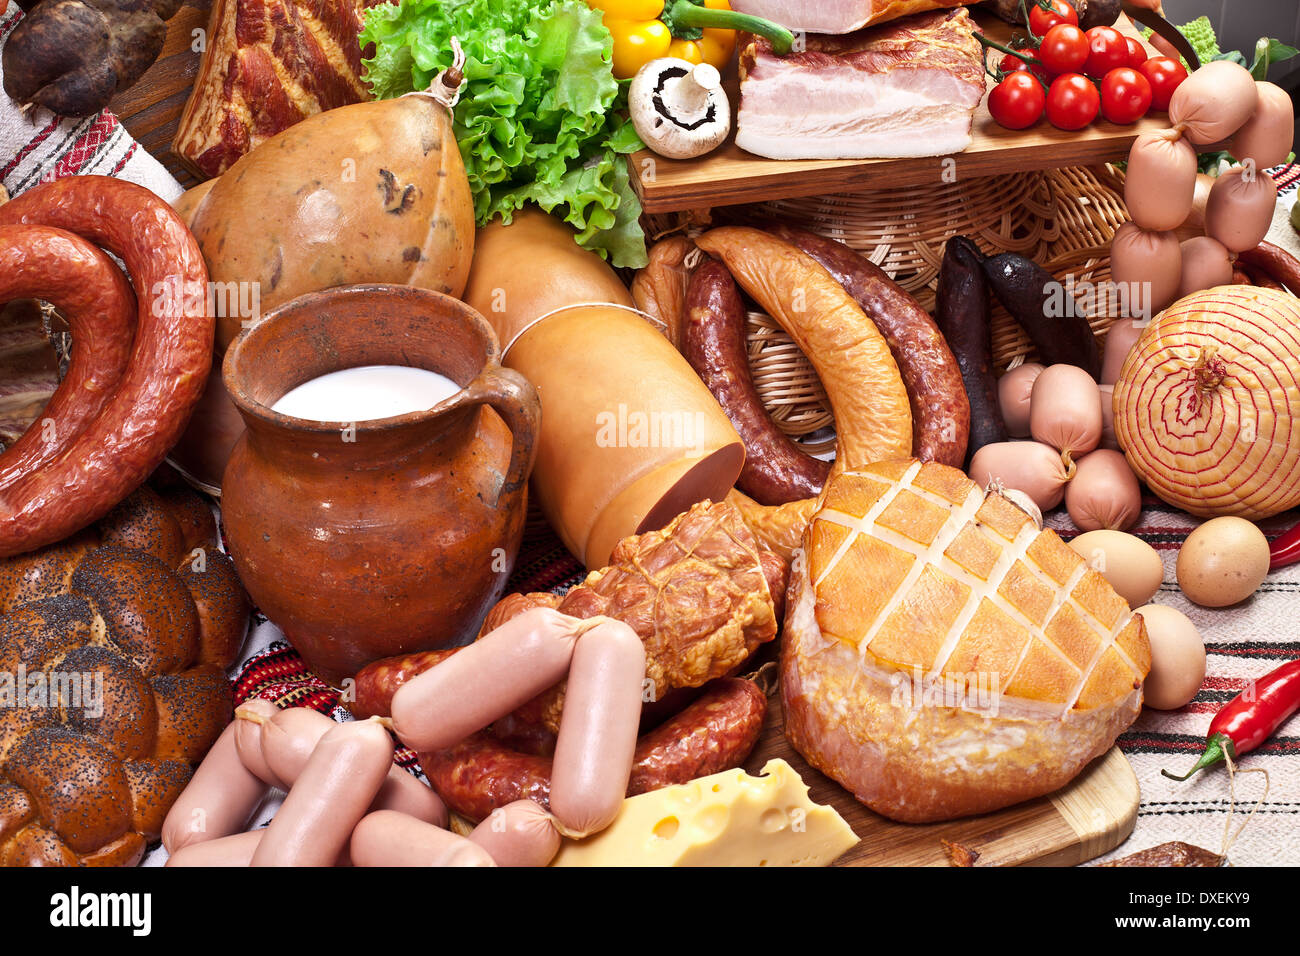 Varietà di salsicce, uova, formaggio e verdure.Close-up shot. Foto Stock